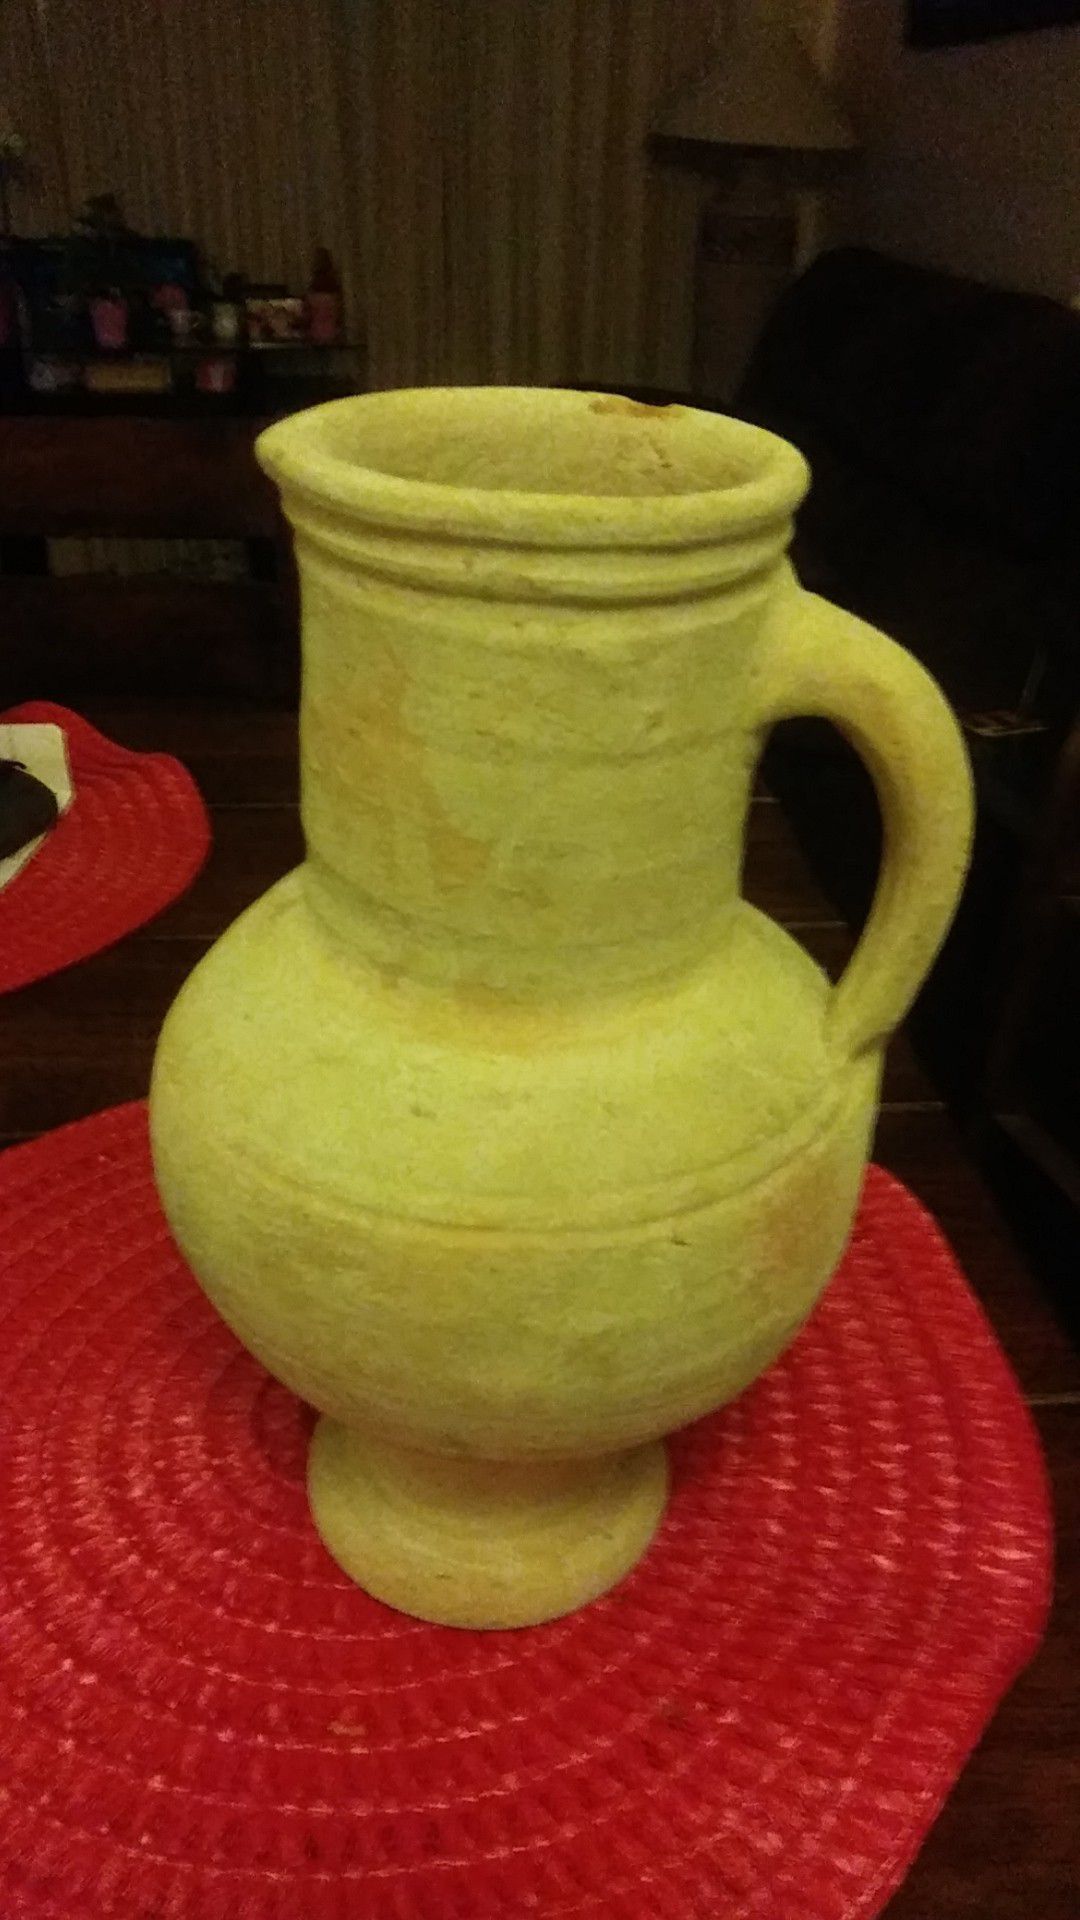 Clay flower pot